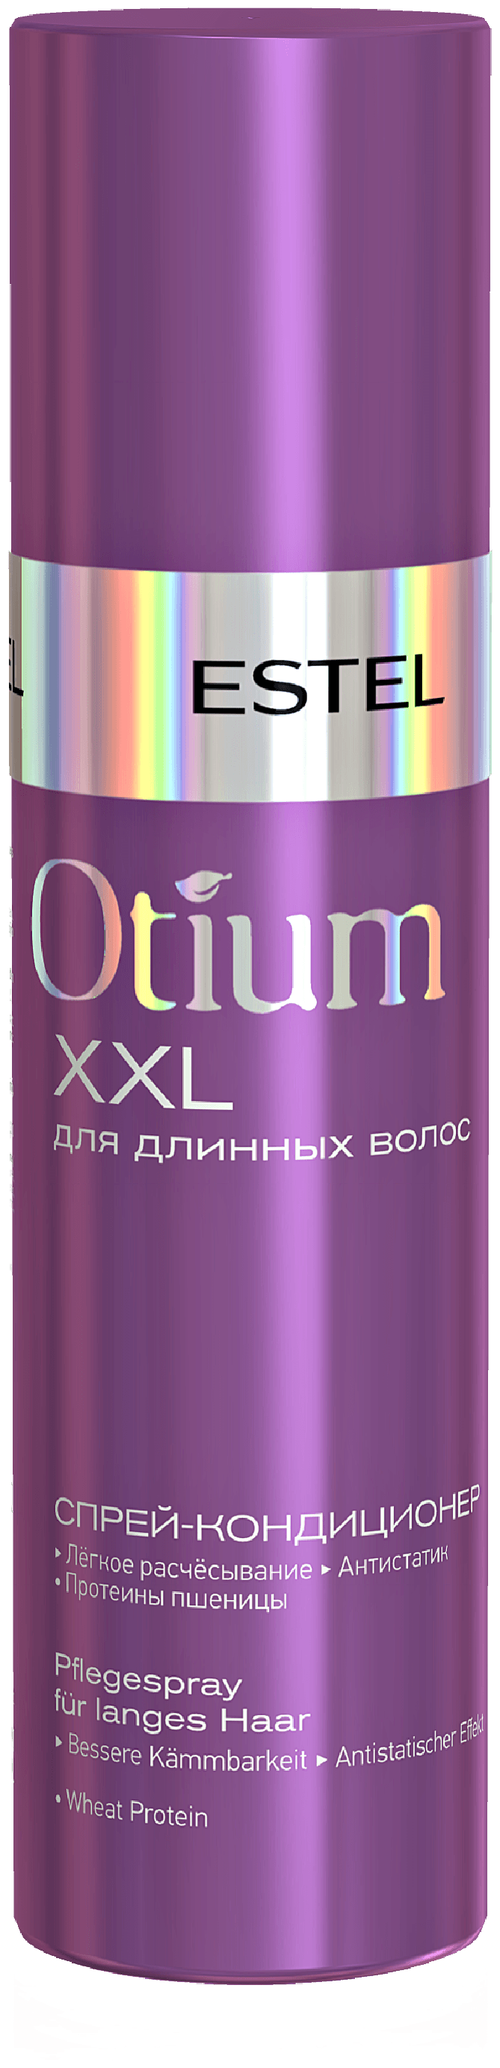 ESTEL Спрей-кондиционер Otium XXL для длинных волос, 200 мл